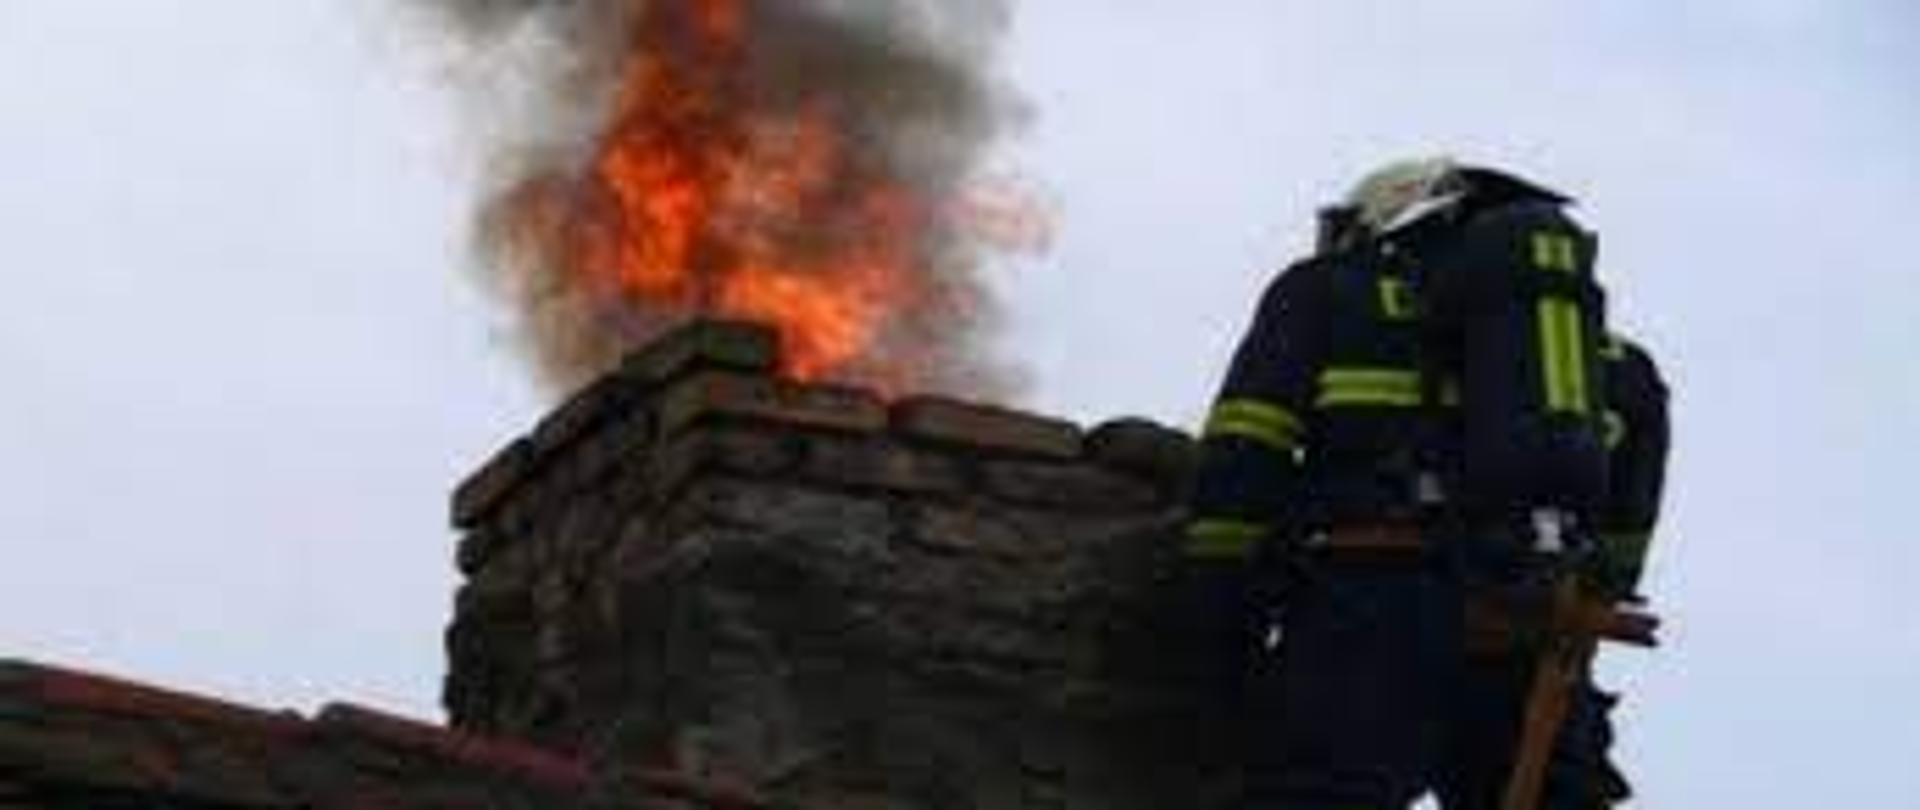 Zdjęcie przedstawia strażaka na dachu budynku podczas pożaru sadzy w kominie. Ze starego uszkodzonego komina wydobywa się ogień i dym.